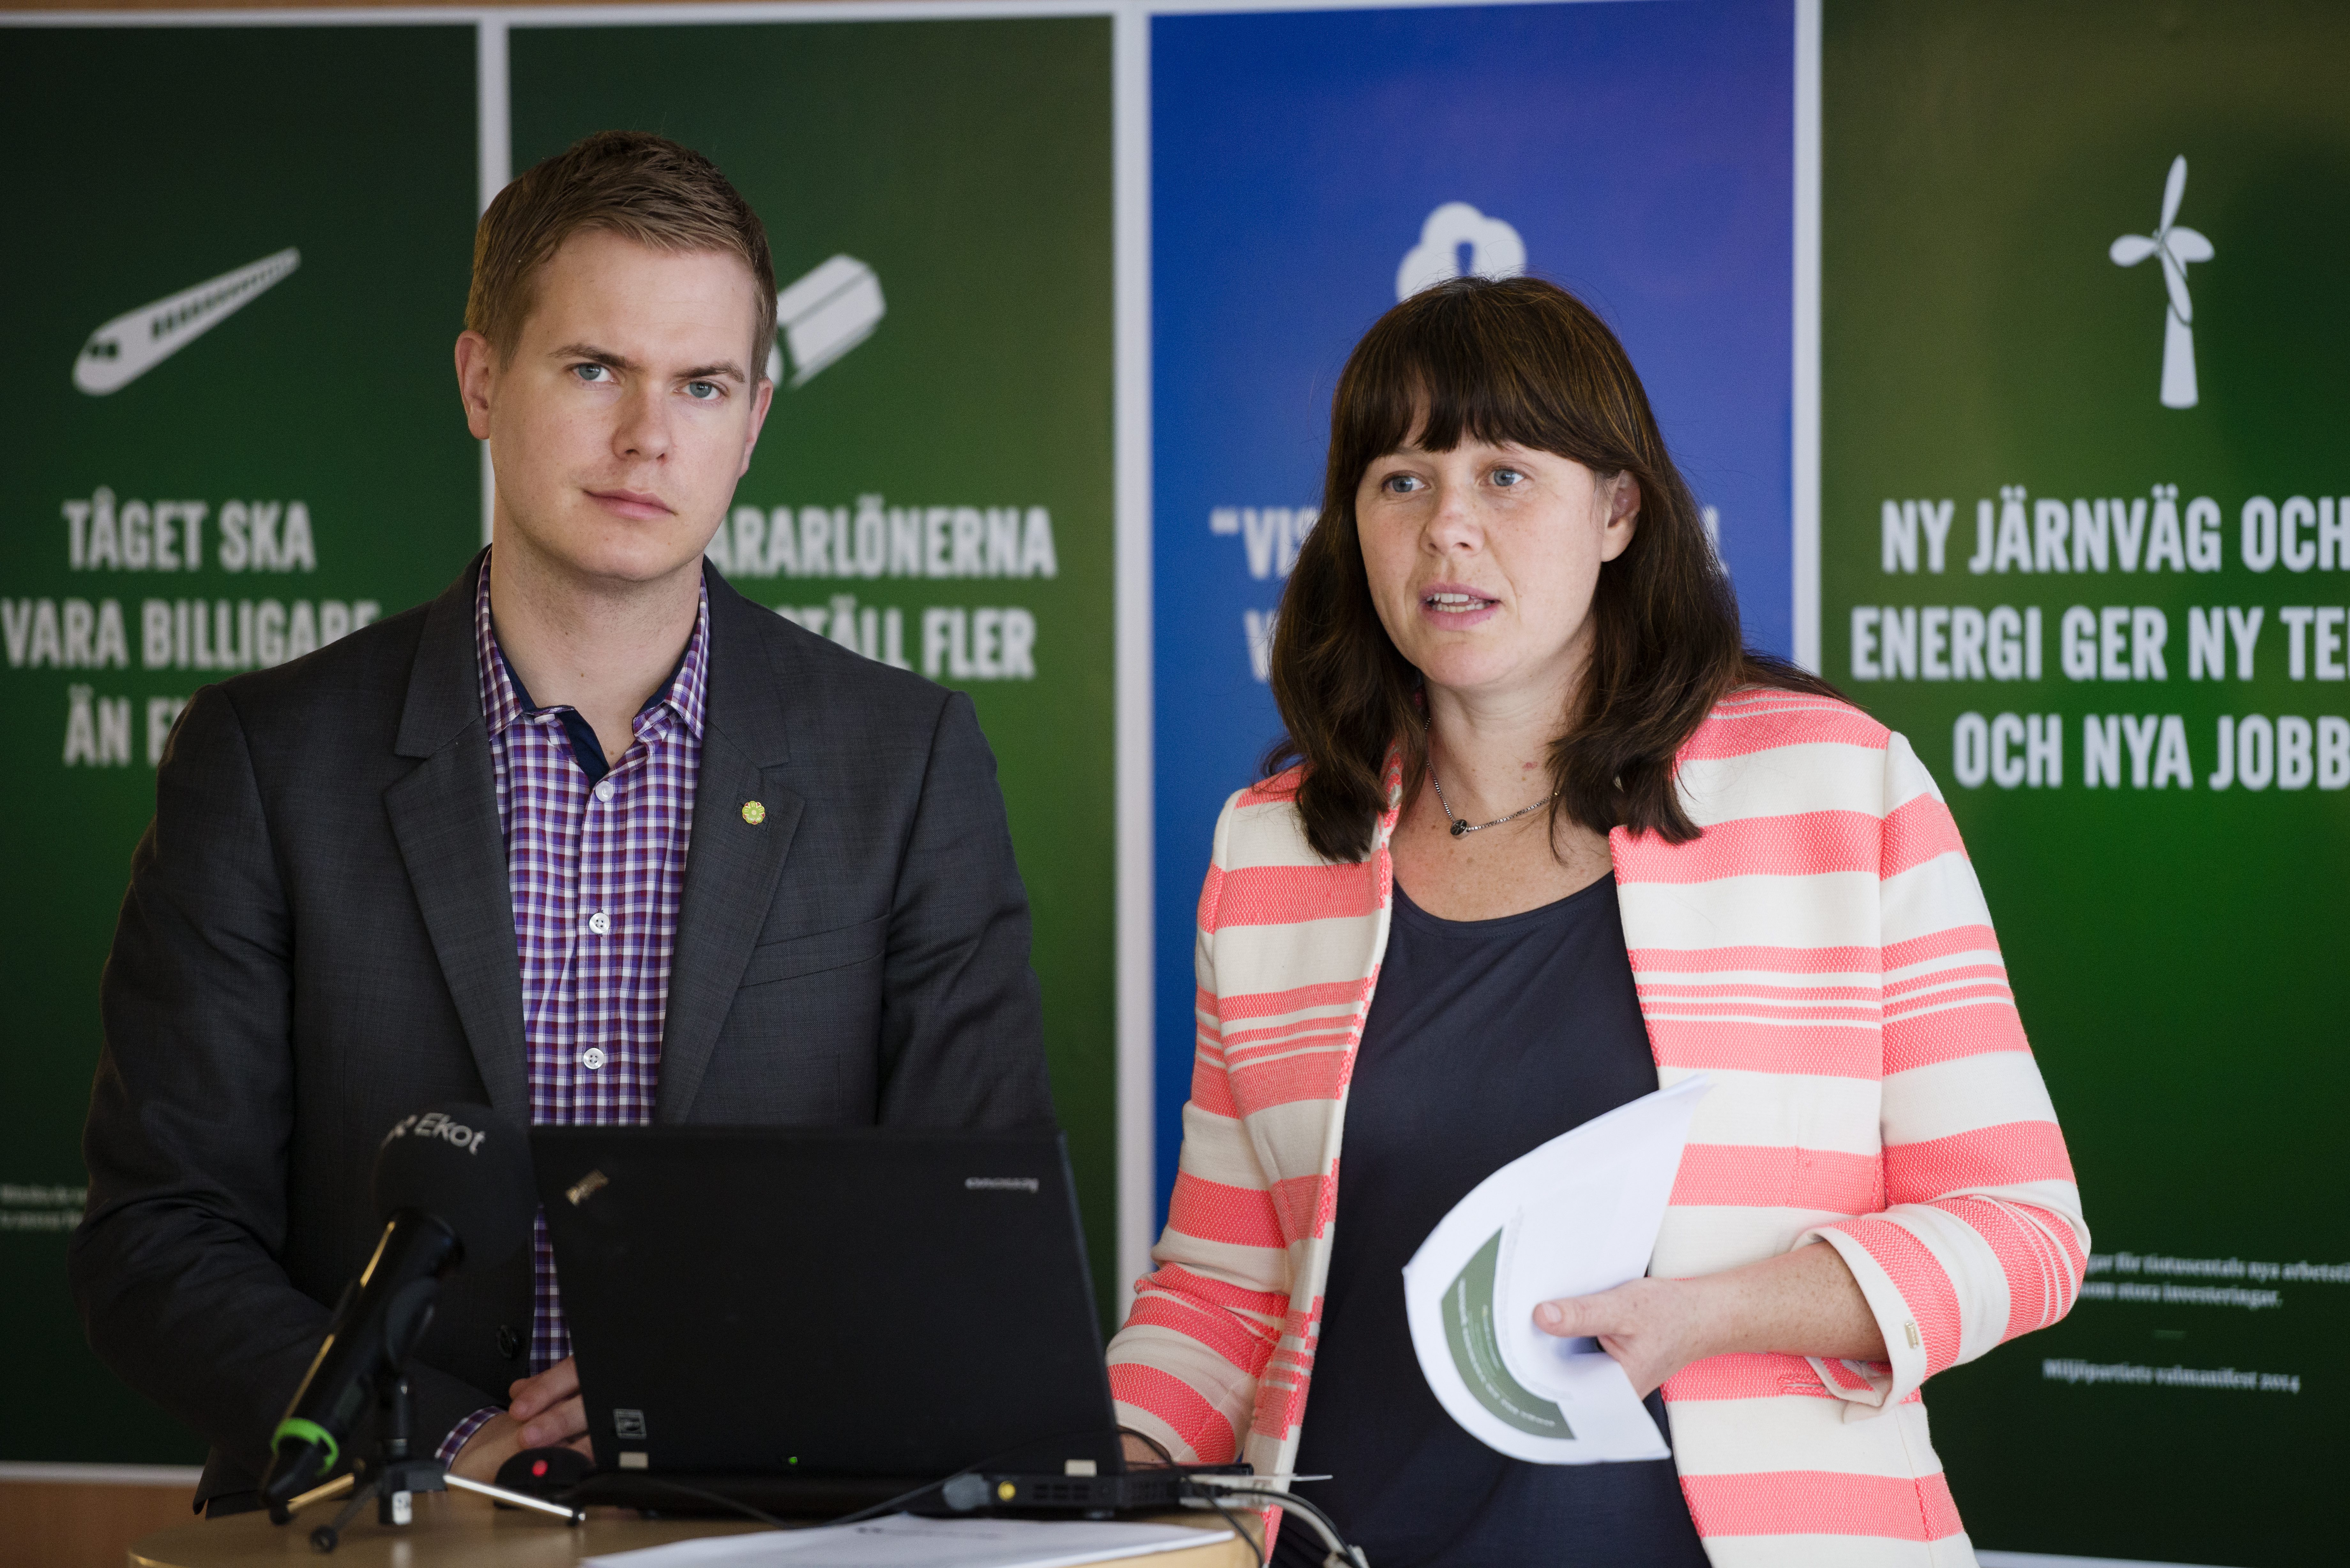 Miljöpartiet, Invandring, Riksdagsvalet 2014, Gustav Fridolin, Sverigedemokraterna, Debatt